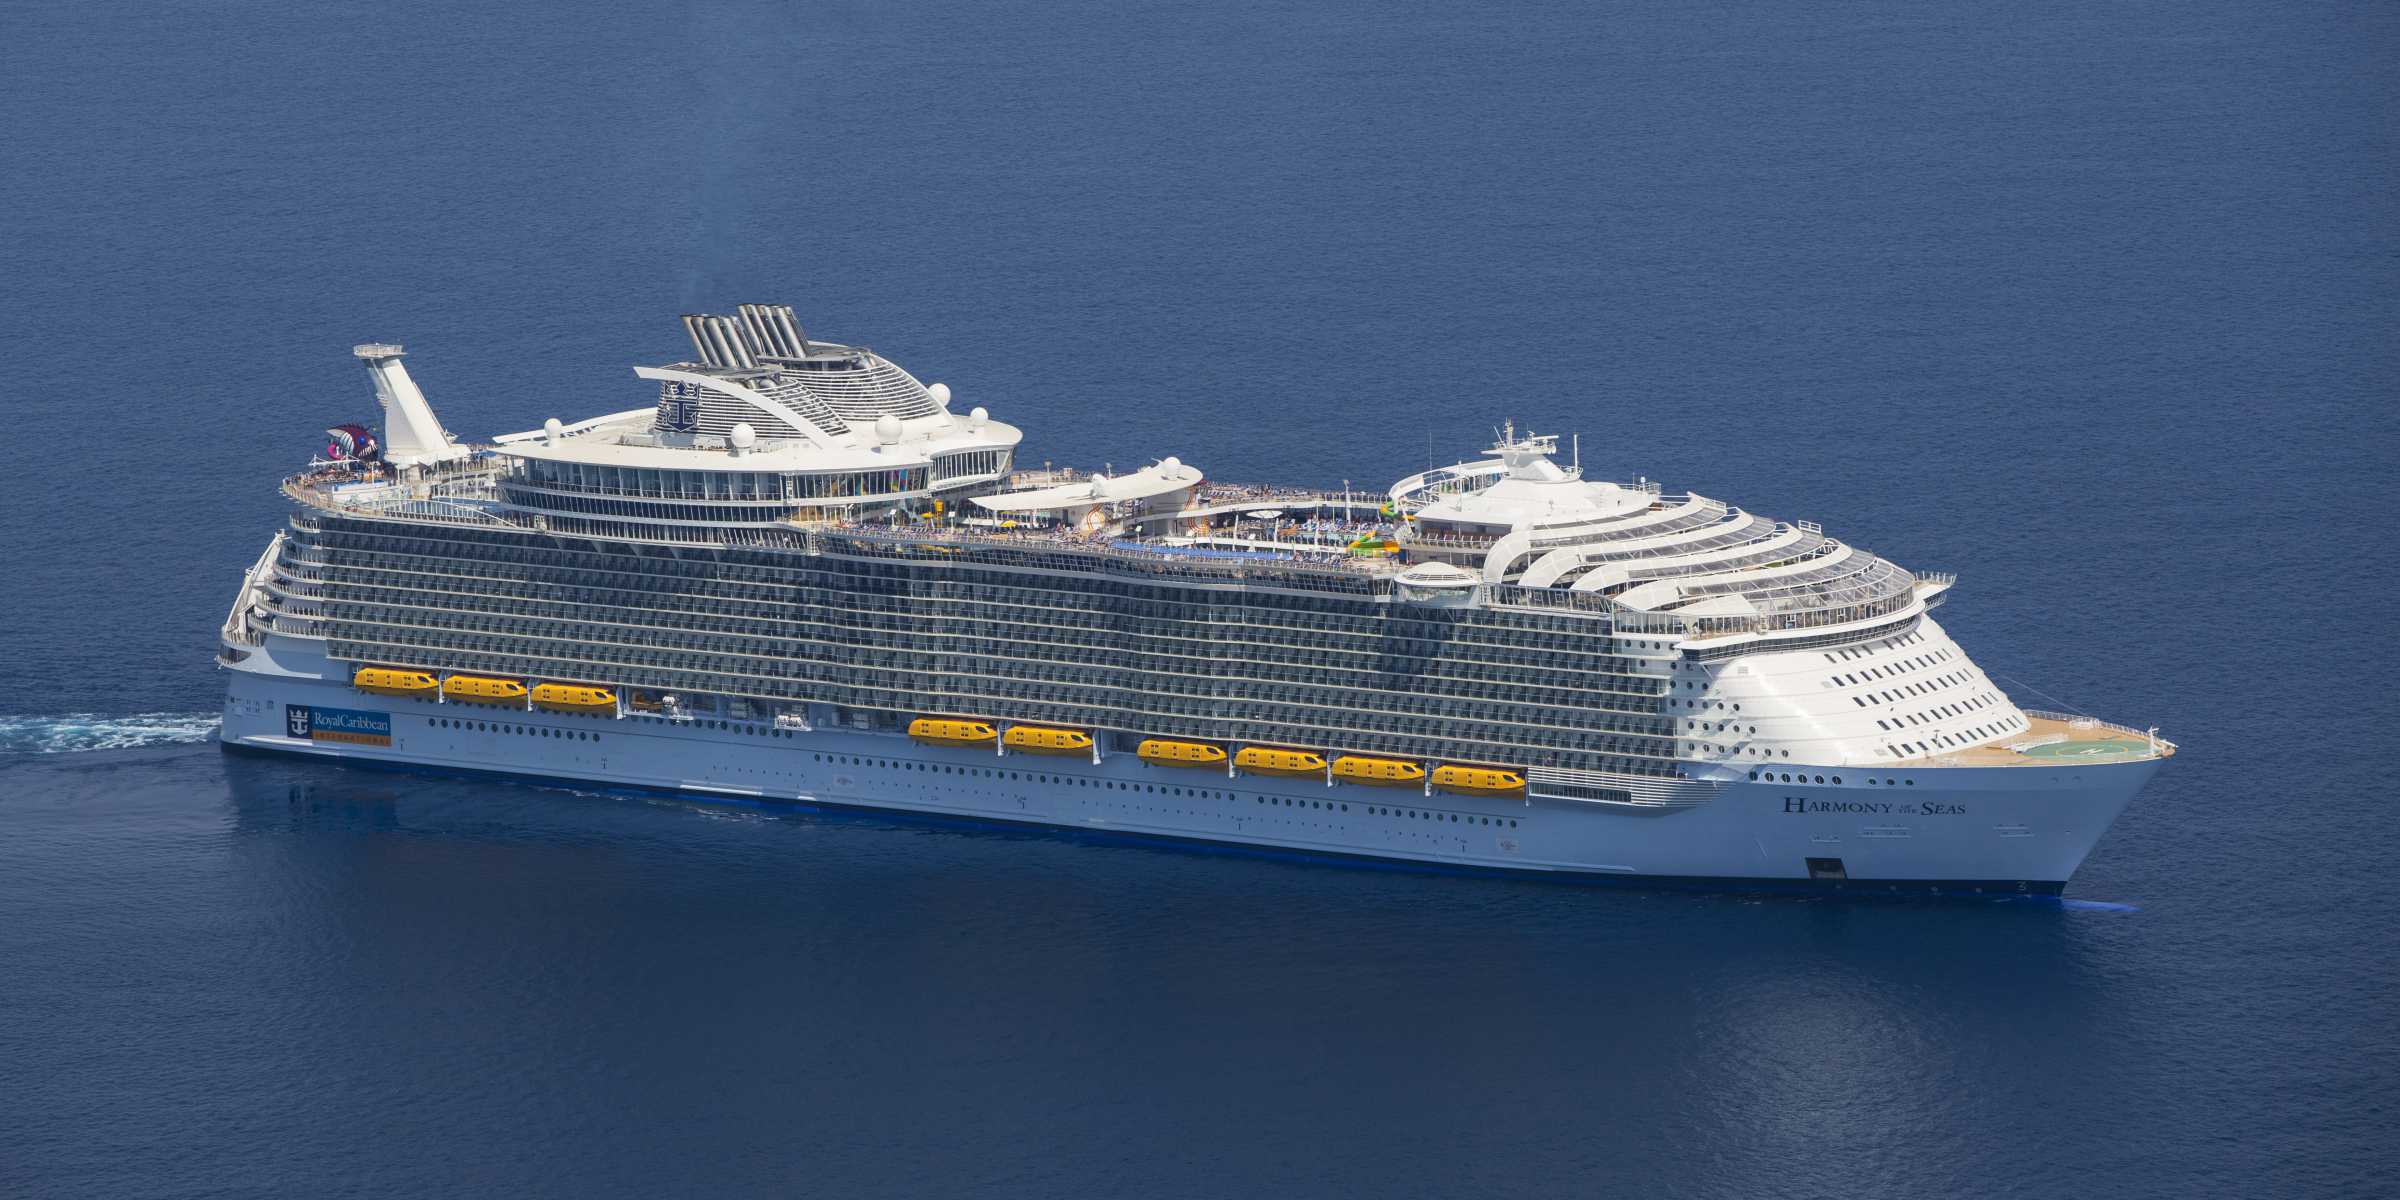 World's Largest Cruise Ship Royal Caribbean